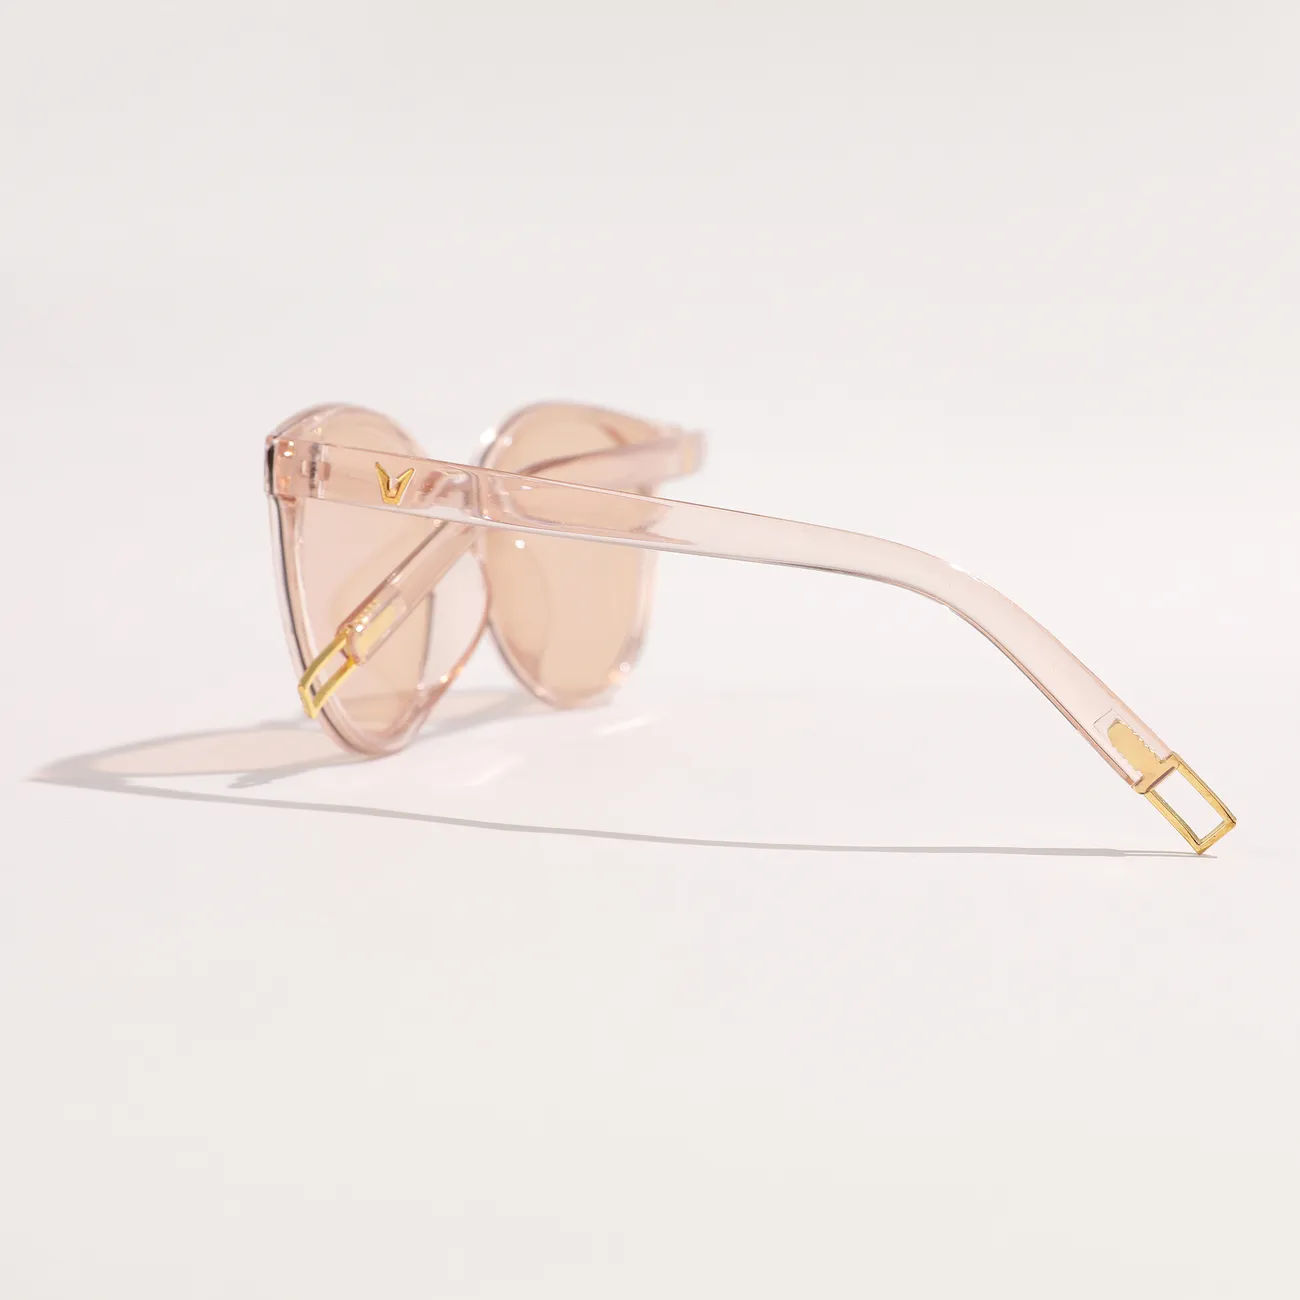 Gafas de sol artísticas vintage casuales para niños pequeños / niños para niños pequeños con bolsa de tela suave Oro rosa big image 1